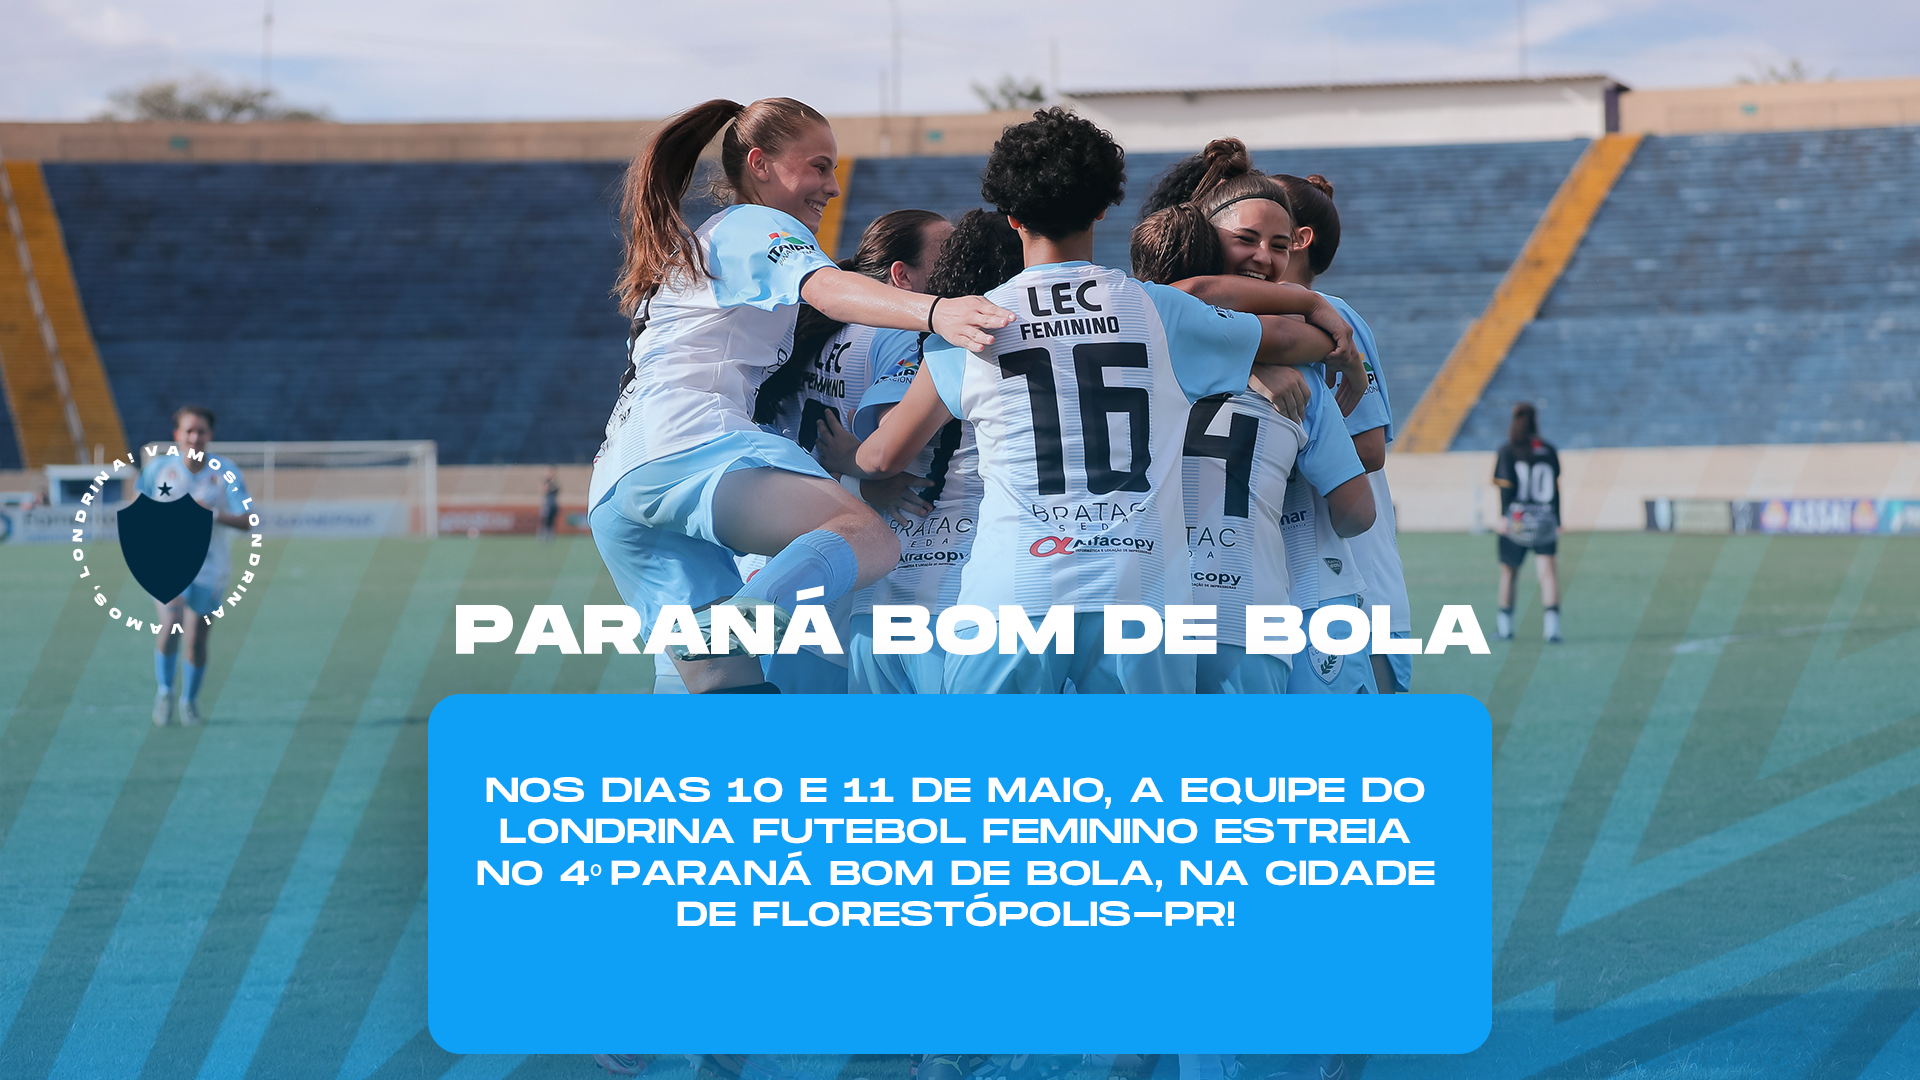 Londrina Futebol Feminino estreia no 4º Paraná Bom de Bola